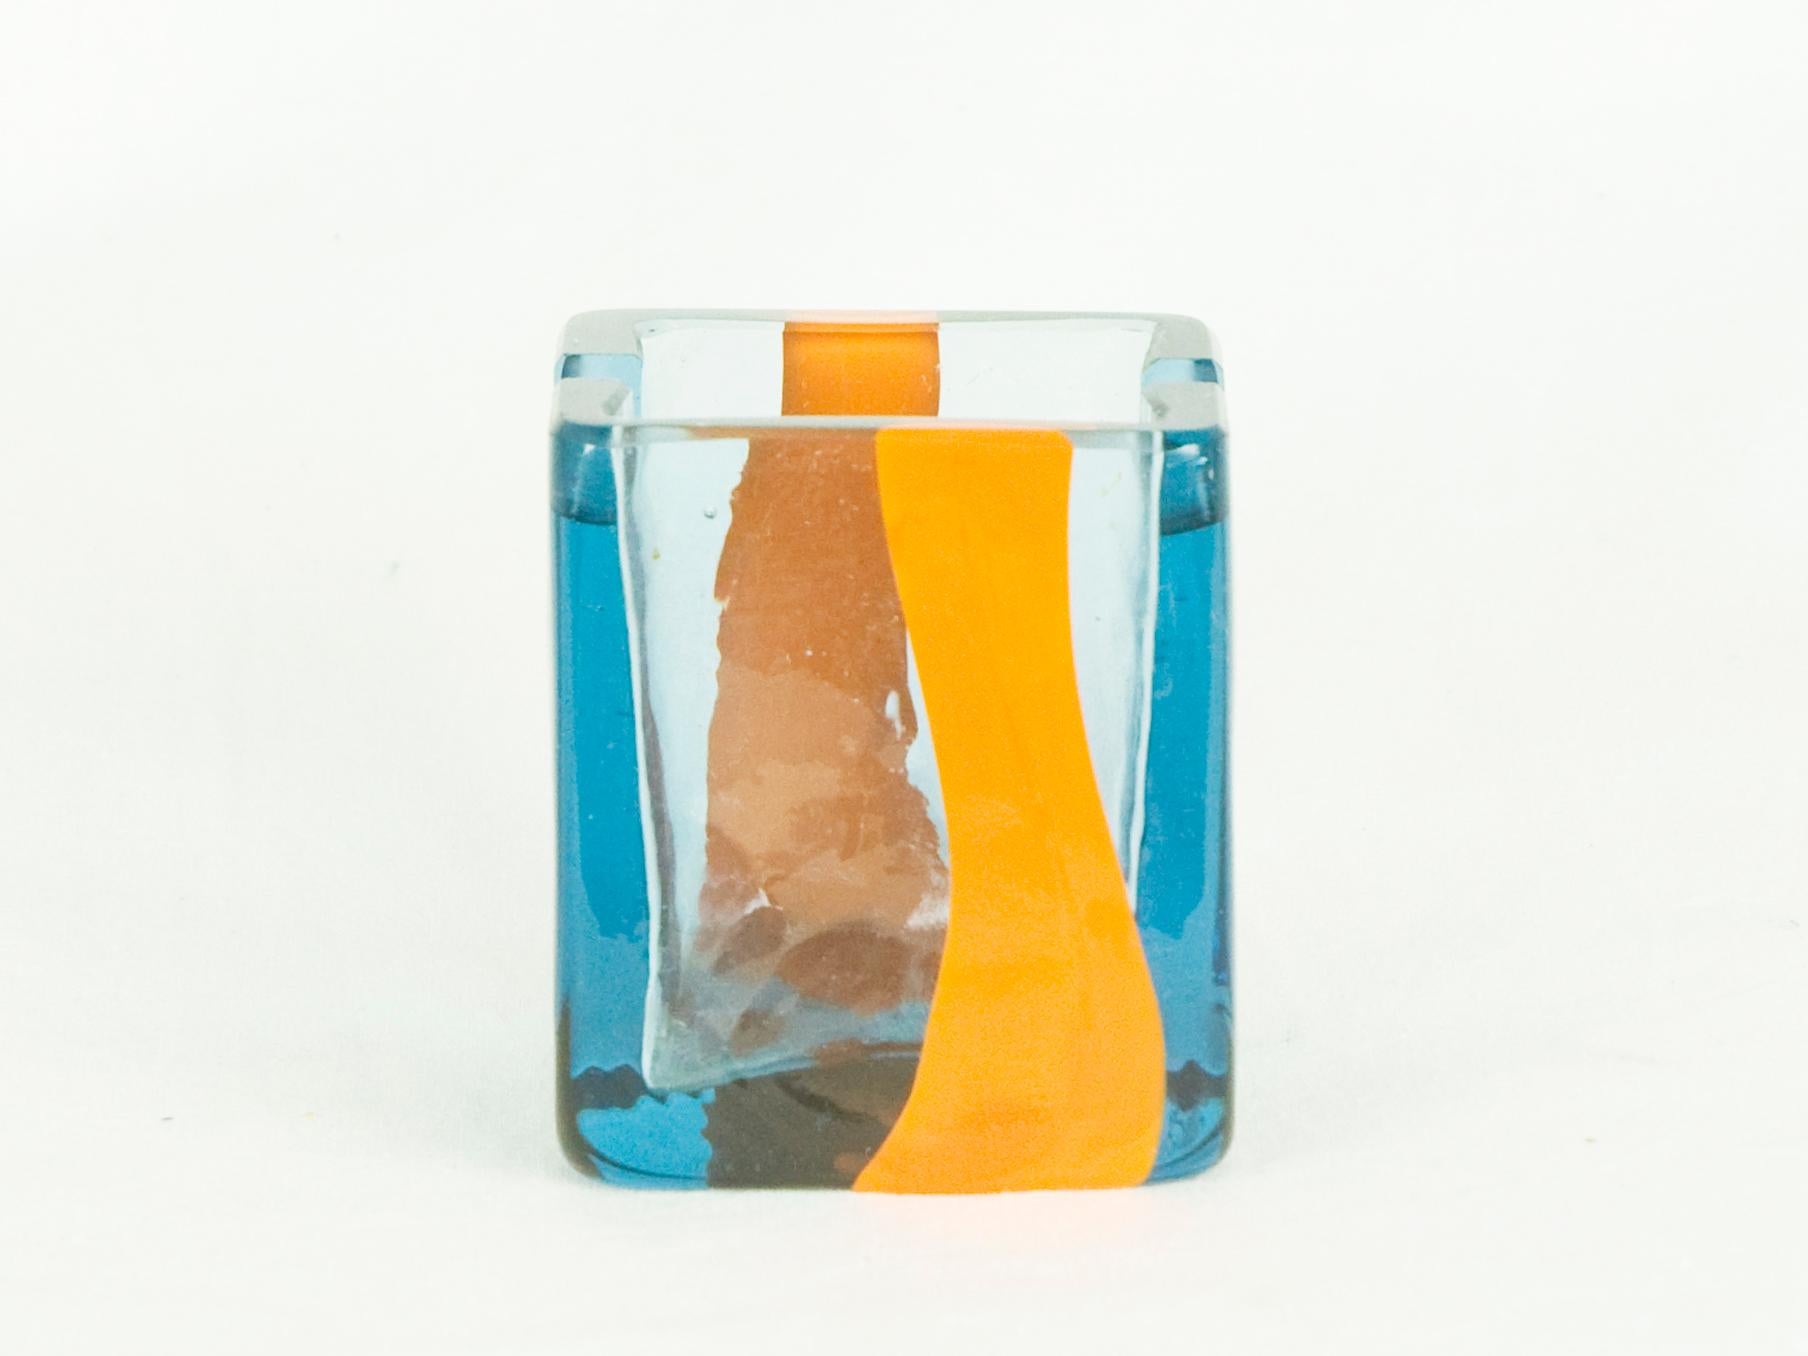 Italian Small Azure & Orange Murano Glass 1960s Ashtray by Pierre Cardin for Venini For Sale